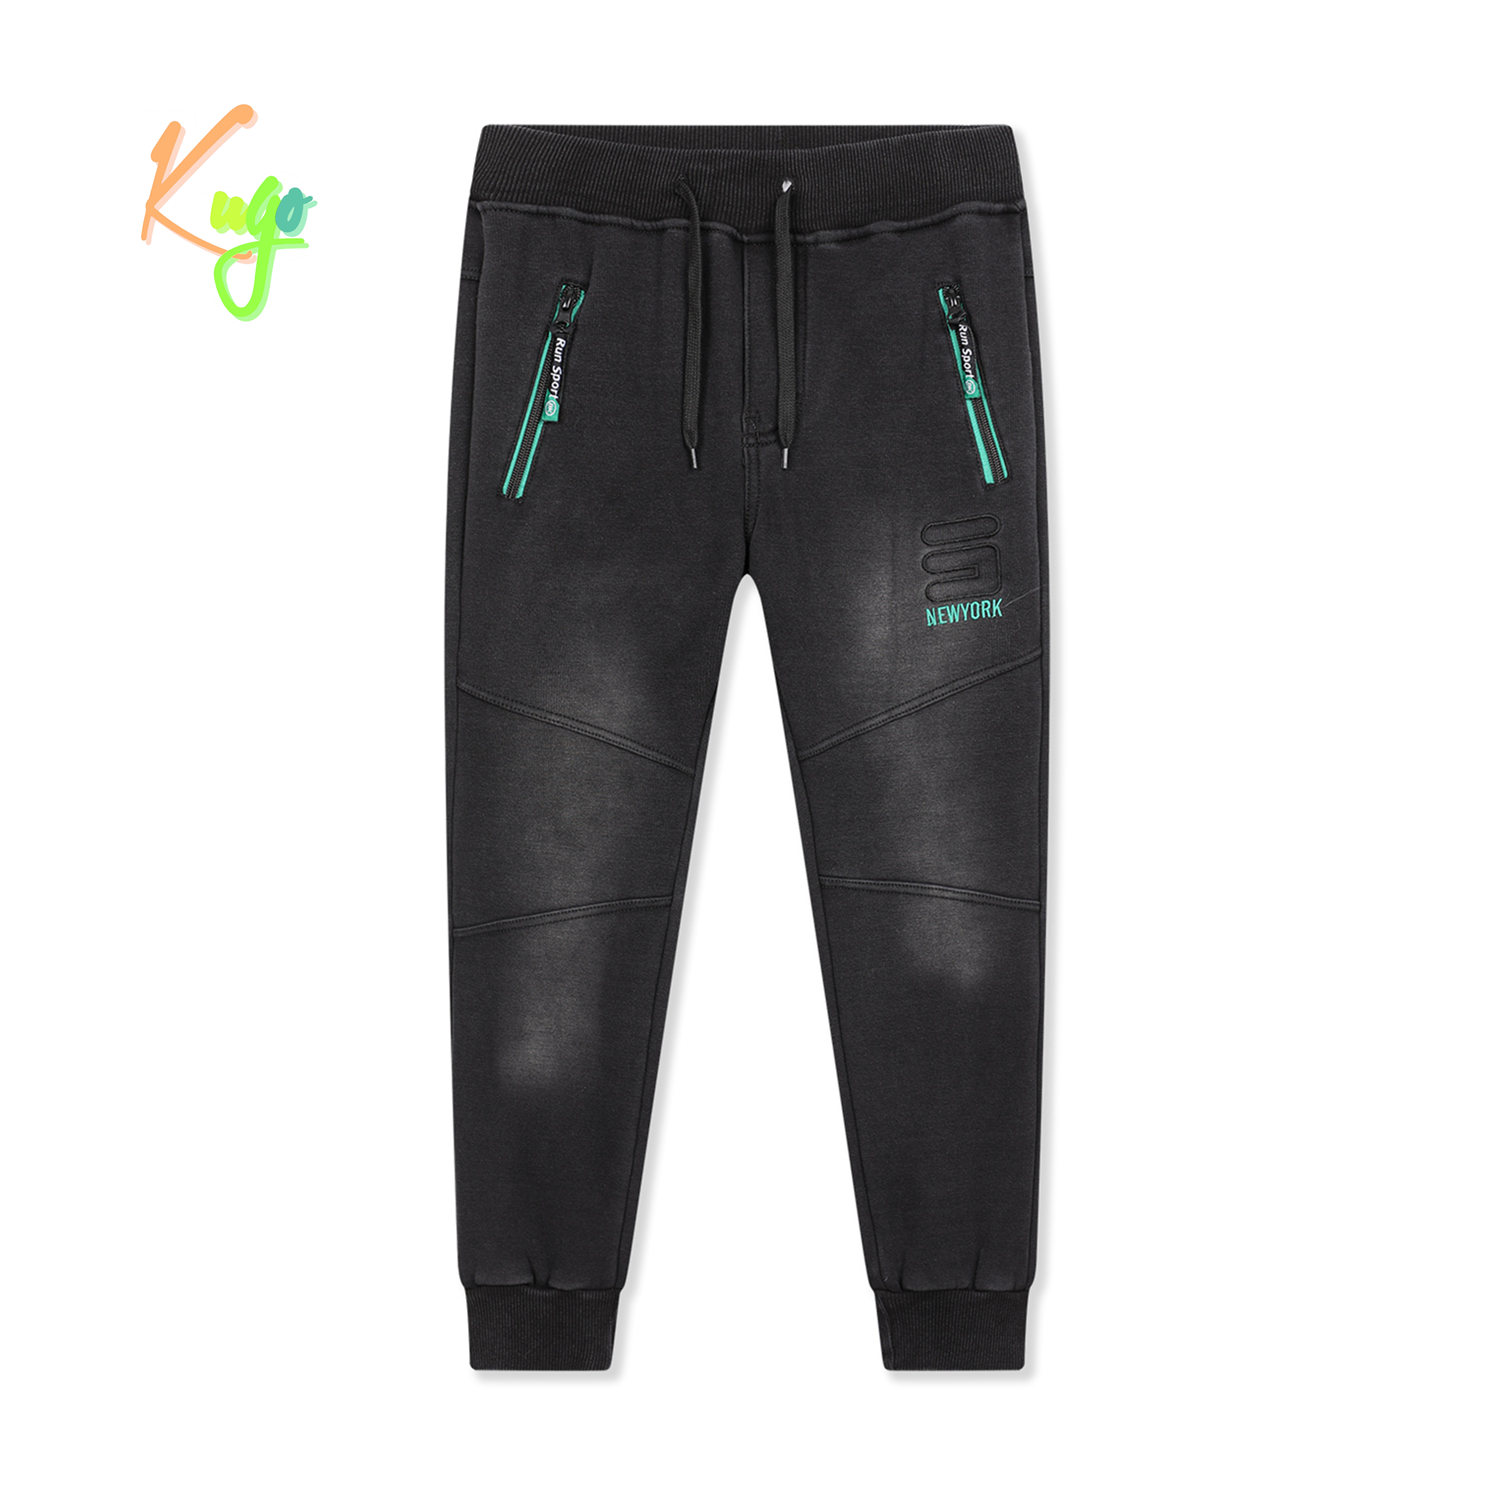 Chlapecké riflové kalhoty/ tepláky, zateplené - KUGO FK0318, černá Barva: Černá, Velikost: 146